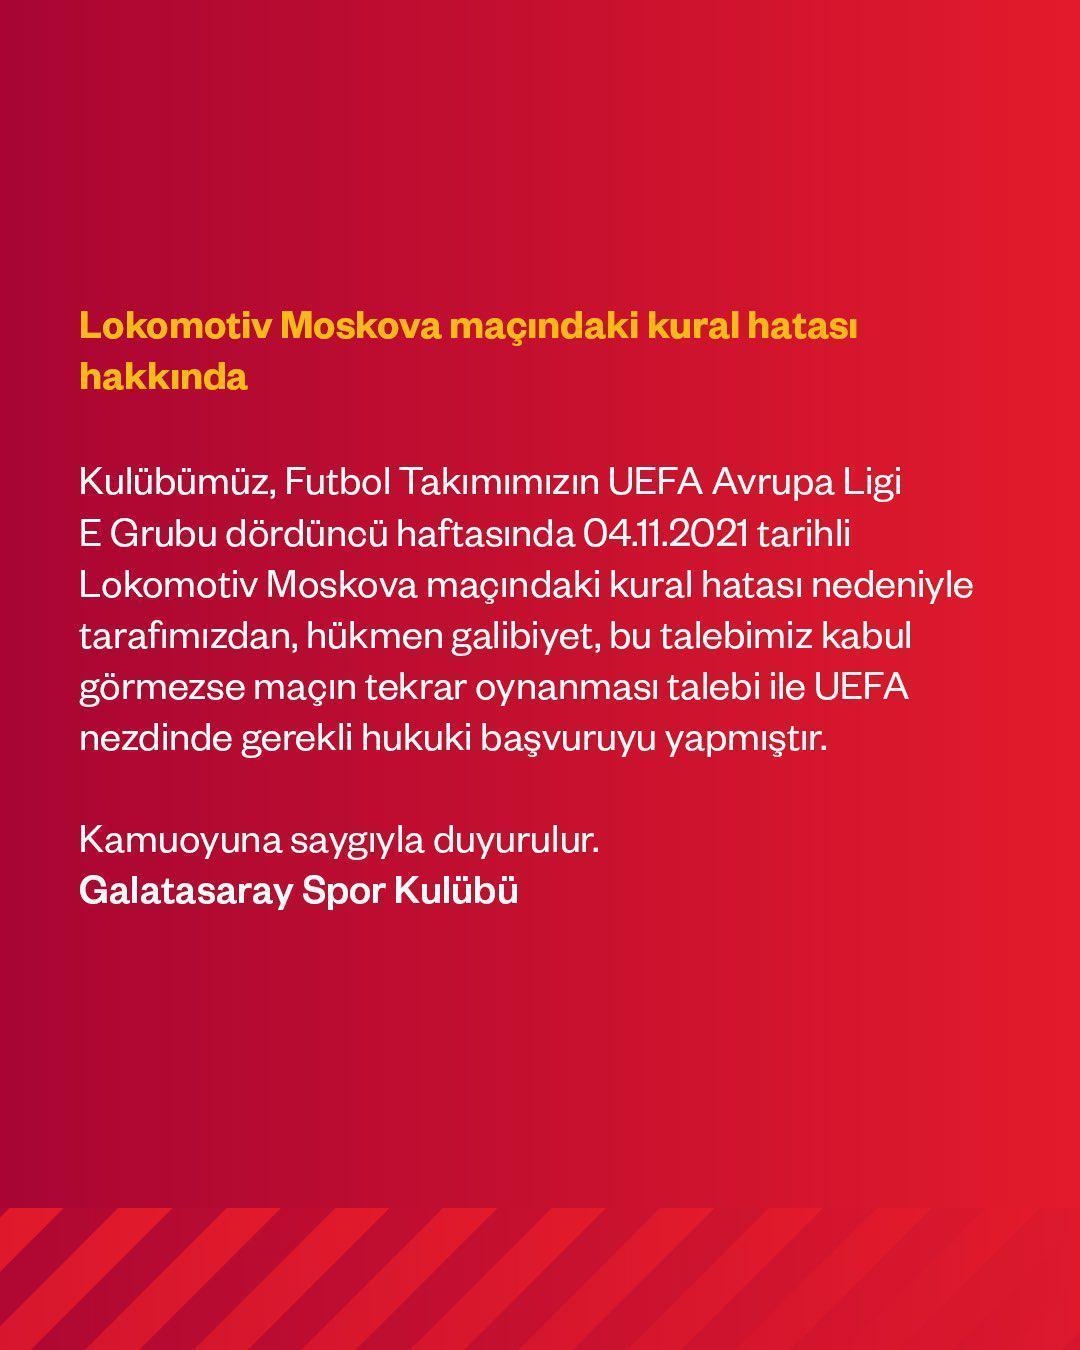 Son dakika: Galatasaraydan kural hatası başvurusu